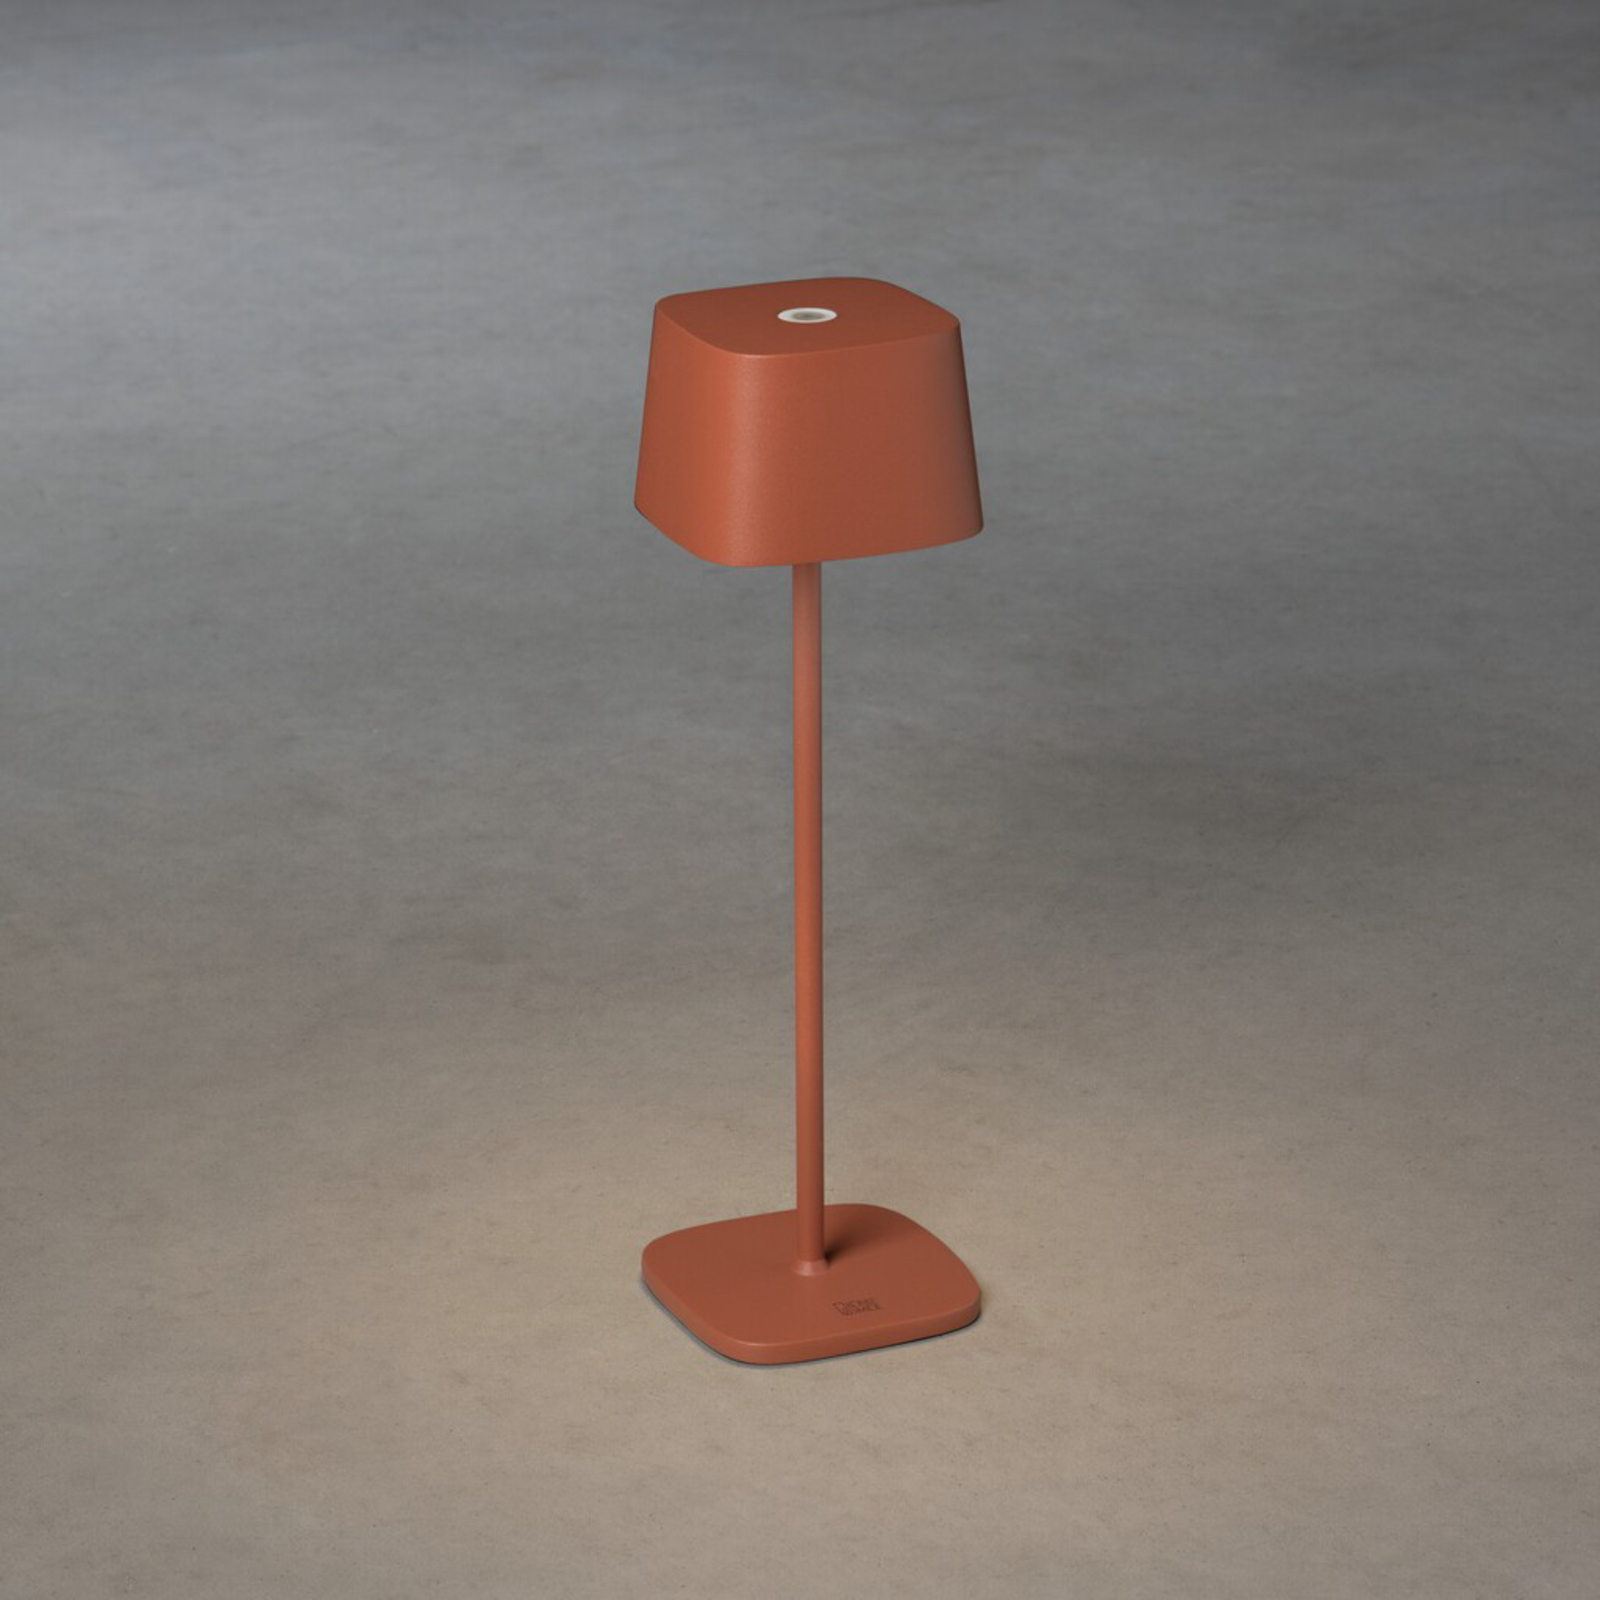 Capri LED table lamp for outdoors, terracotta